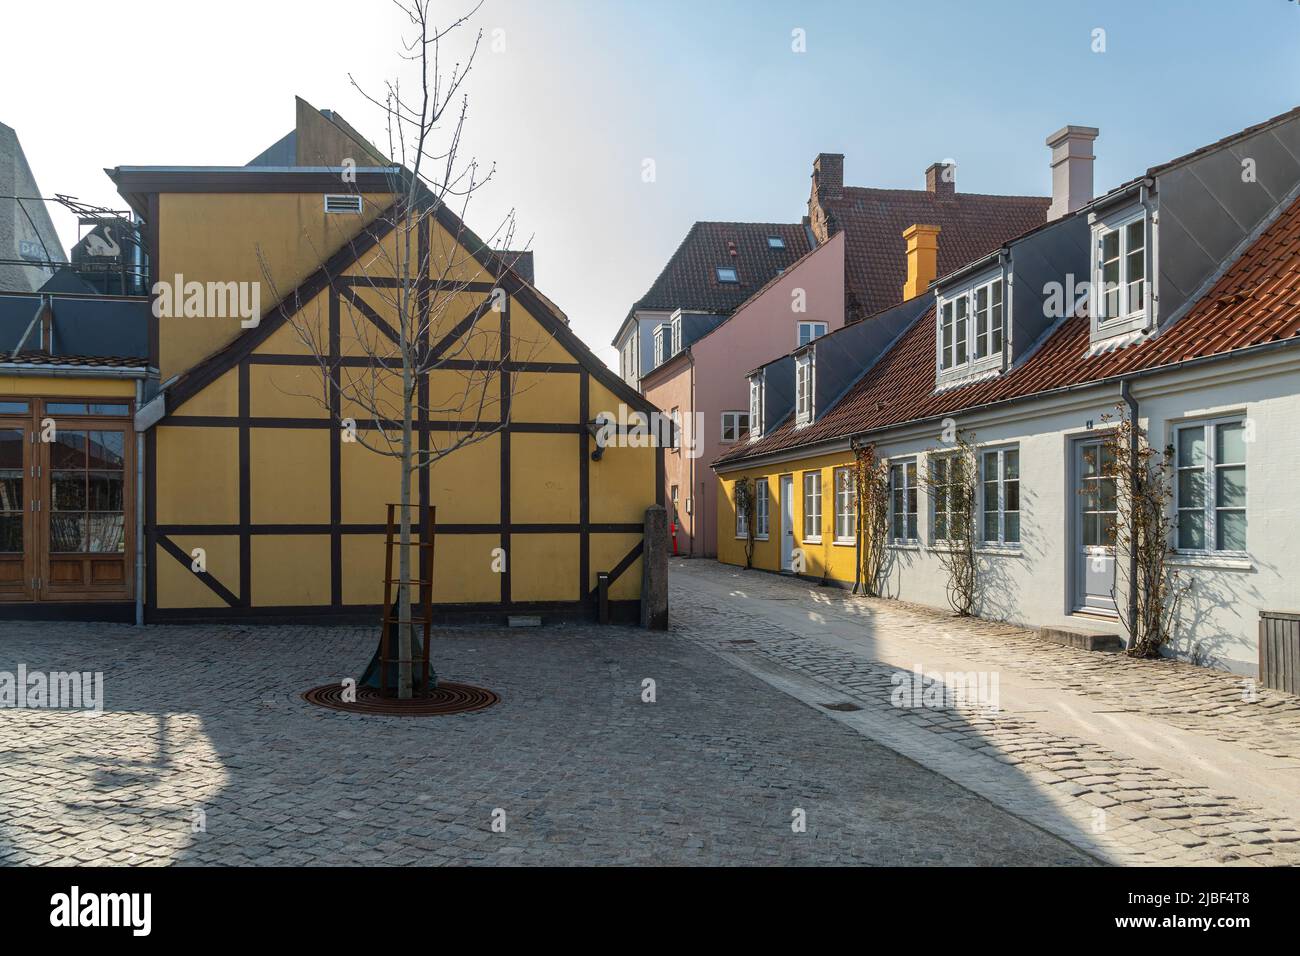 Entrepôts traditionnels à colombages et maisons jaunes anciennes dans le centre-ville historique d'Odense. Odense, Fyn, Danemark, Europe Banque D'Images